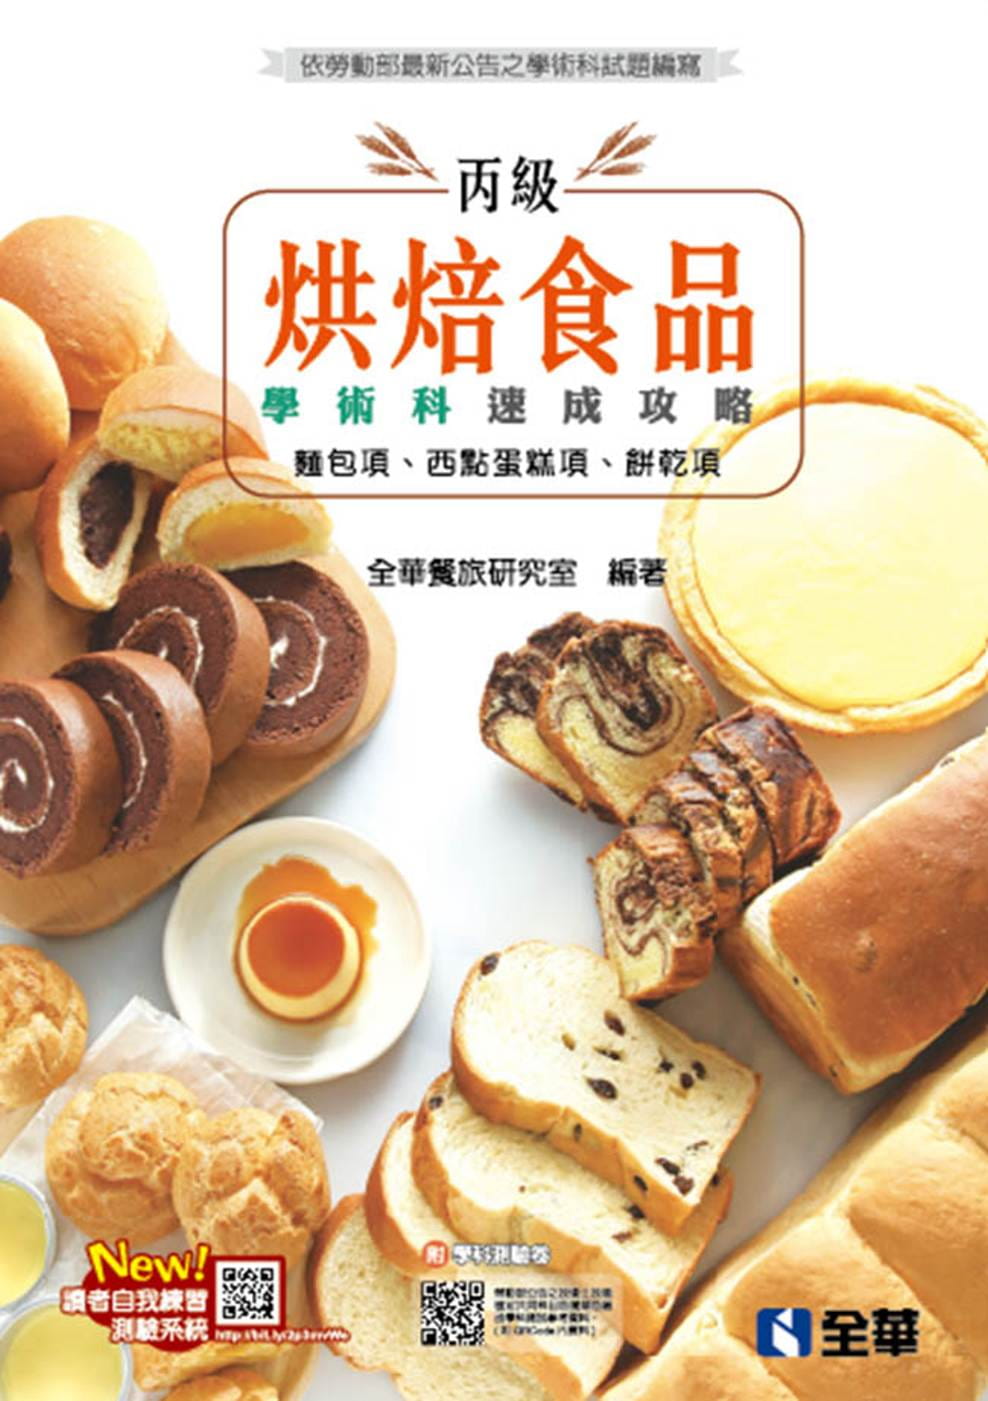 丙級烘焙食品學術科速成攻略(麵包、西點蛋糕、餅乾)(2020最新版)(附學科測驗卷)?